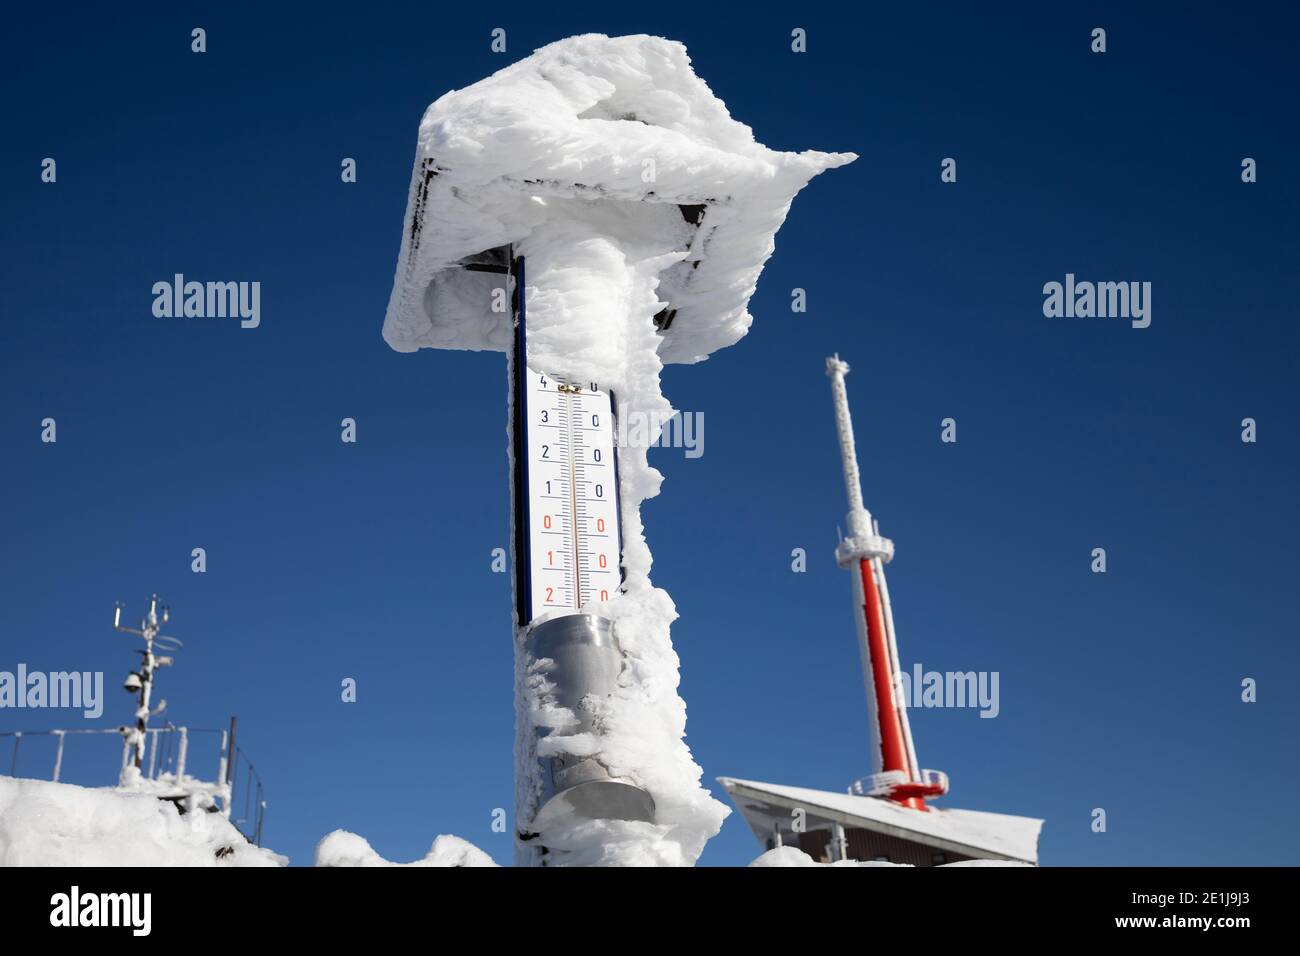 Thermoter im Winter. Das Gerät misst die Außentemperatur auf dem Gipfel des Lysa hora-Gebirges, Beskids, Tschechische Republik / Tschechien. Sender und c Stockfoto